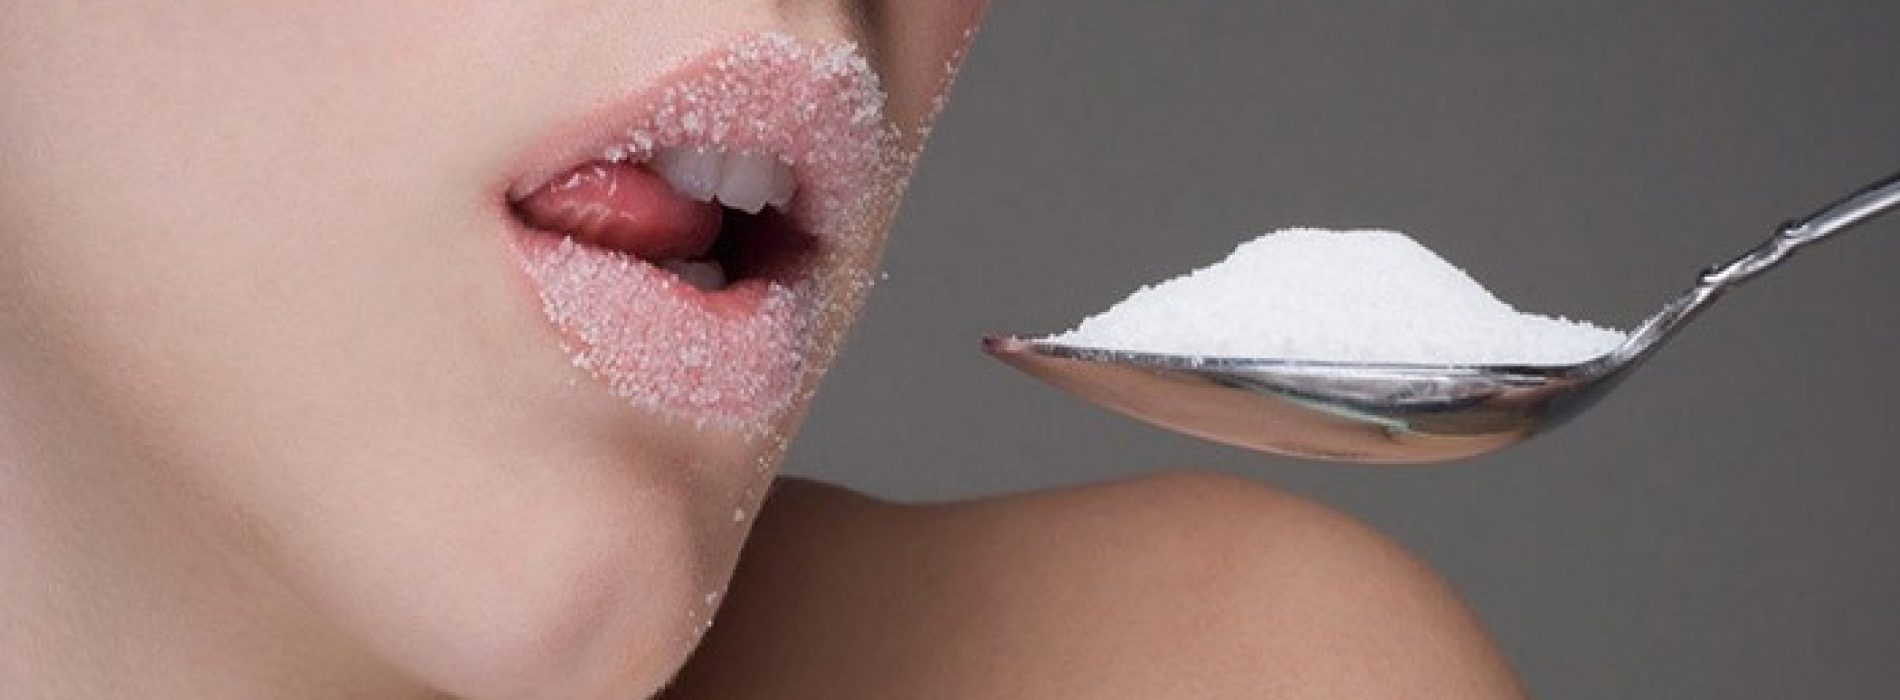 Tien waarschuwingstekens dat je teveel suiker eet